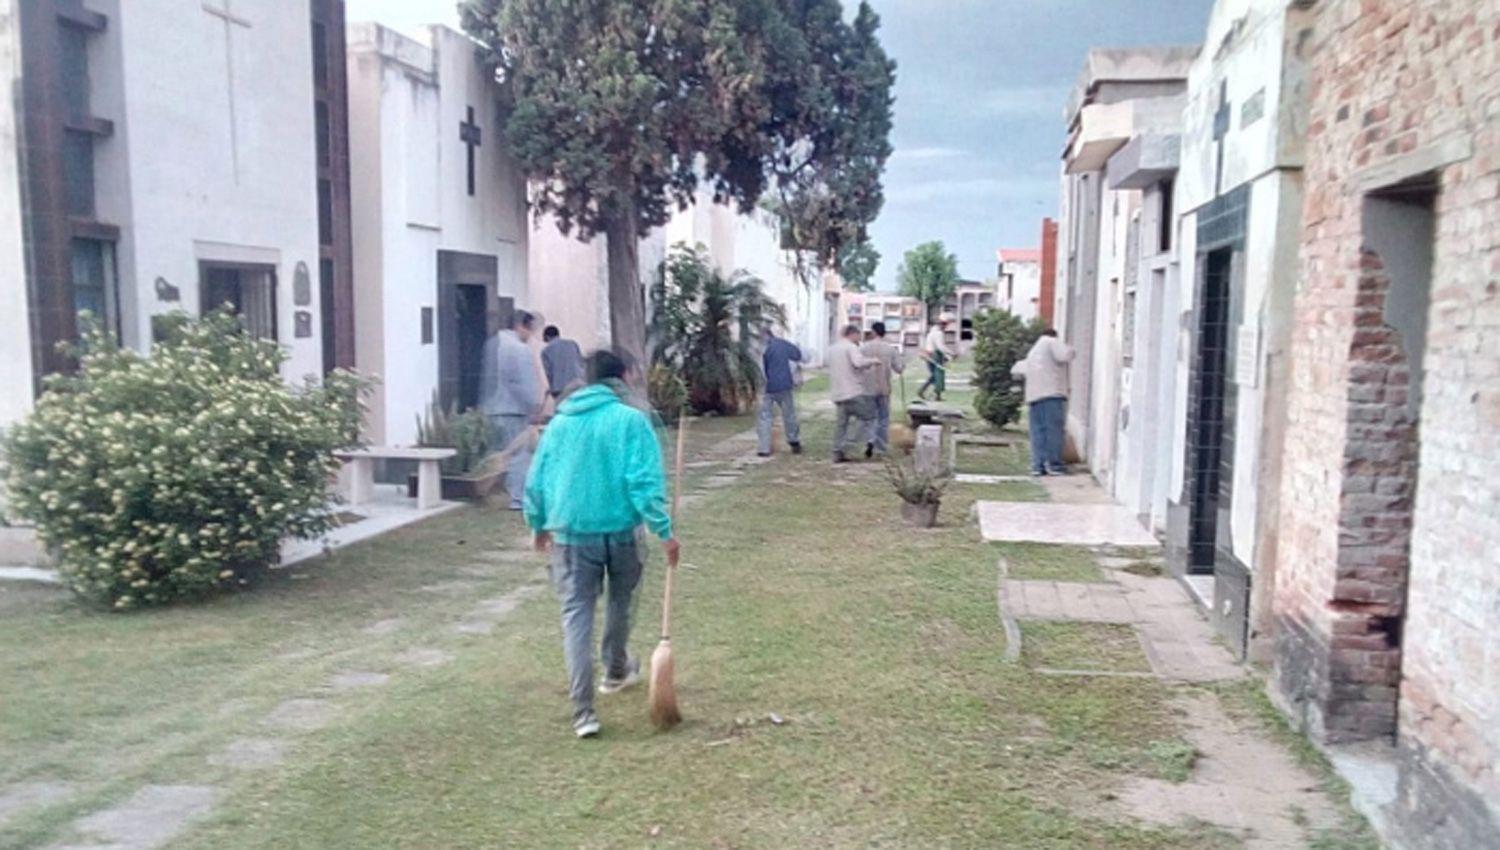 El cementerio La Misericordia permaneceraacute cerrado a los visitantes hasta el proacuteximo lunes 13 de abril